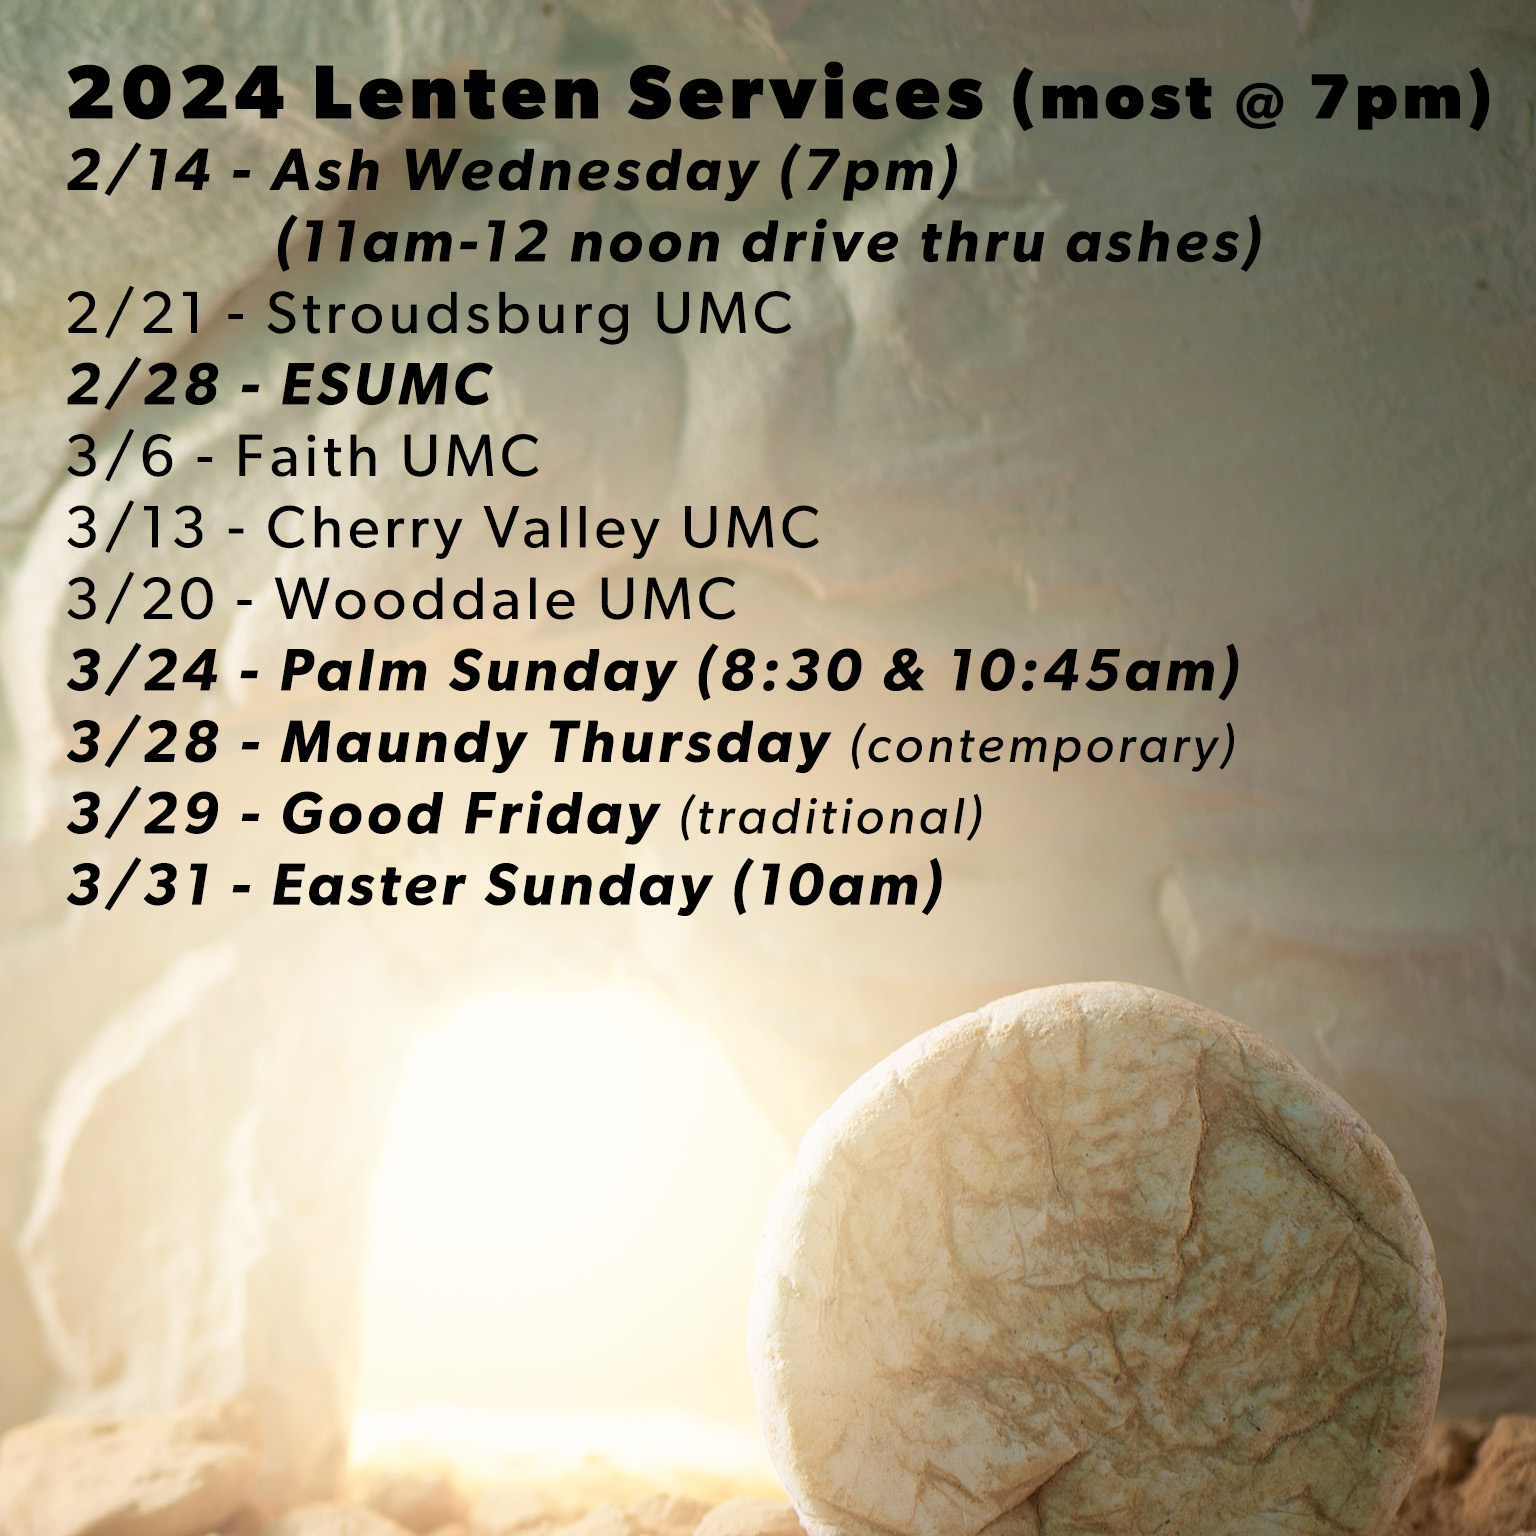 Lenten Services 2024 graphic 1-25-24 rev 2-11-24